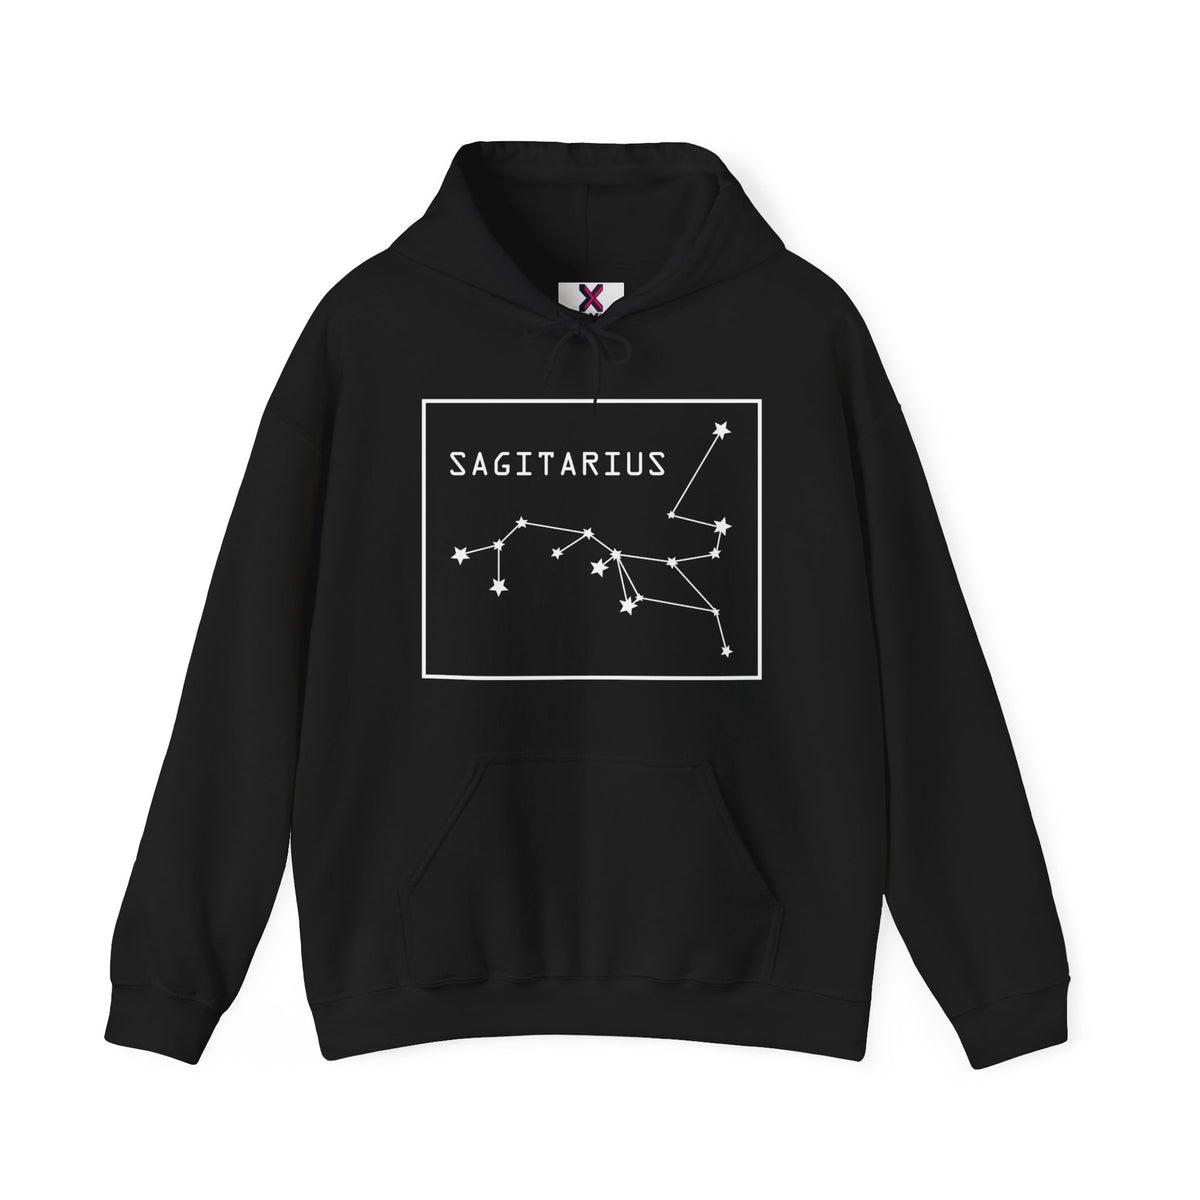 Sagittarius Hoodies / December Sagittarius Hoodies